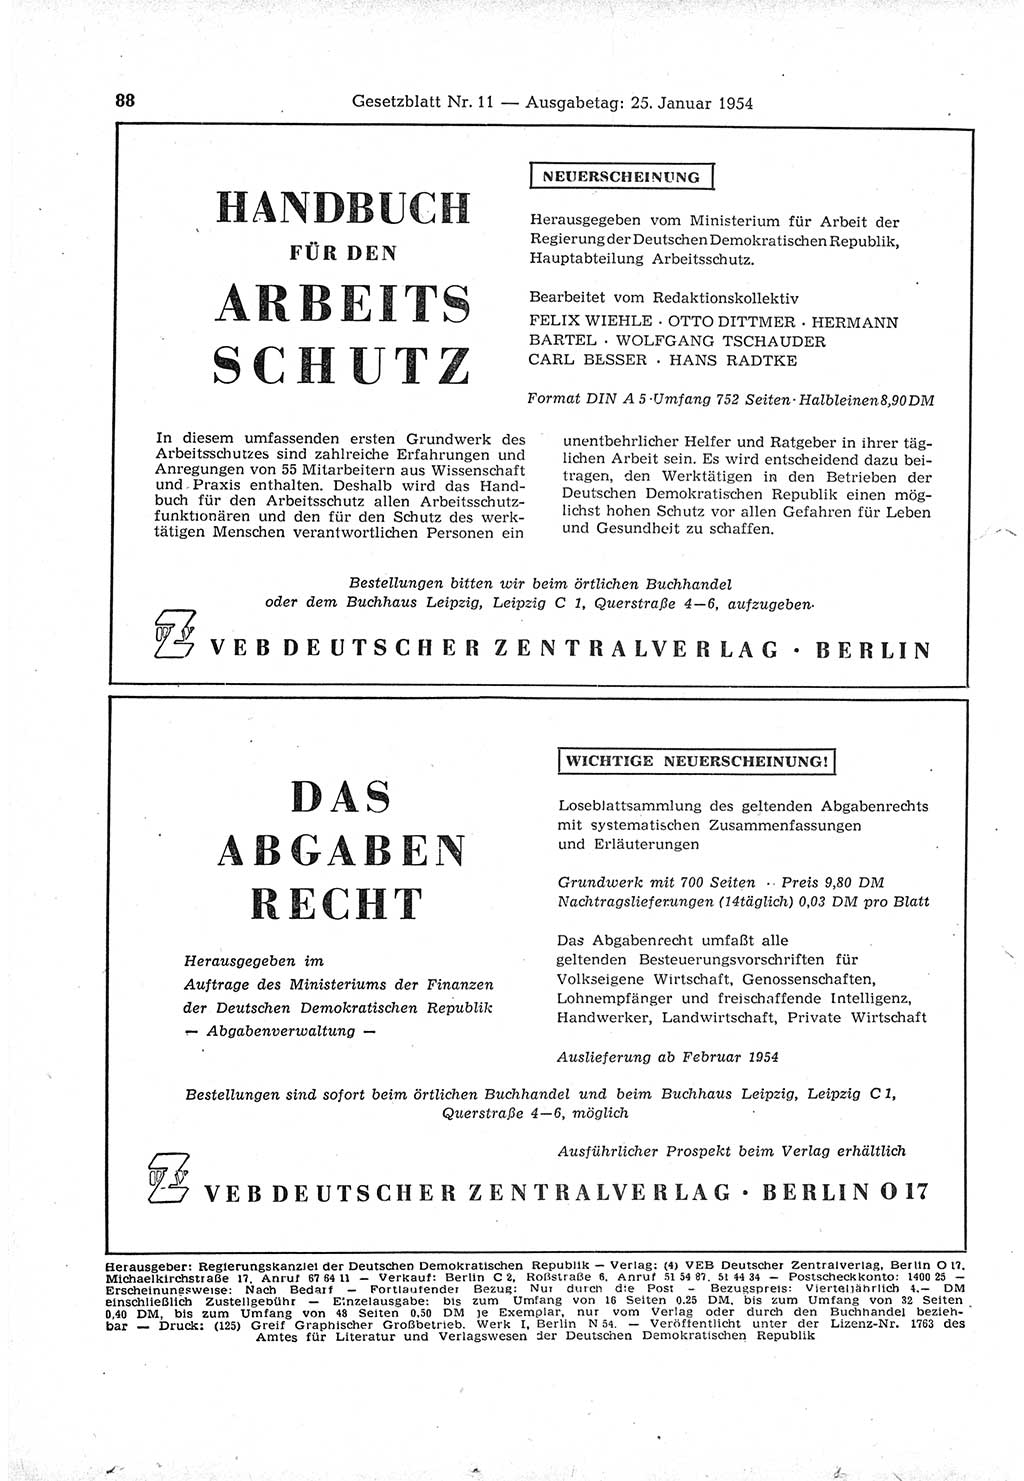 Gesetzblatt (GBl.) der Deutschen Demokratischen Republik (DDR) 1954, Seite 88 (GBl. DDR 1954, S. 88)